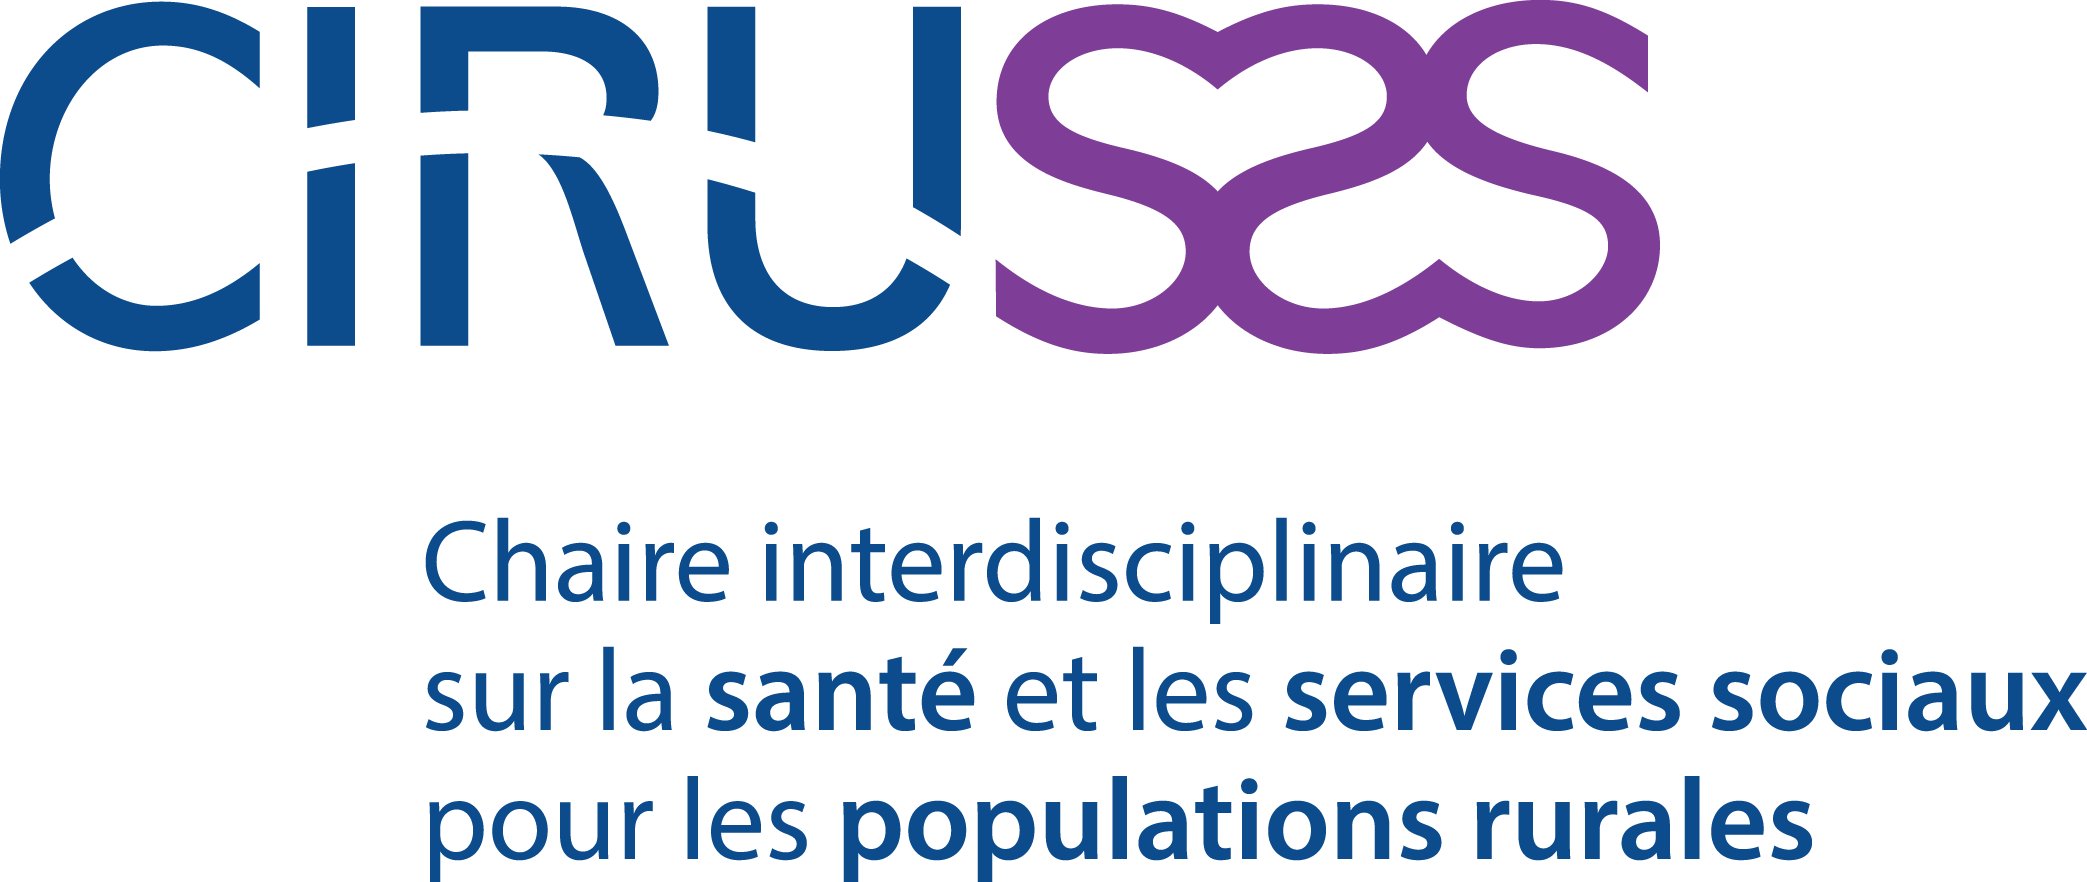 CIRUSSS Centre interdisciplinaire sur la santé et les services sociaux pour les populations rurales